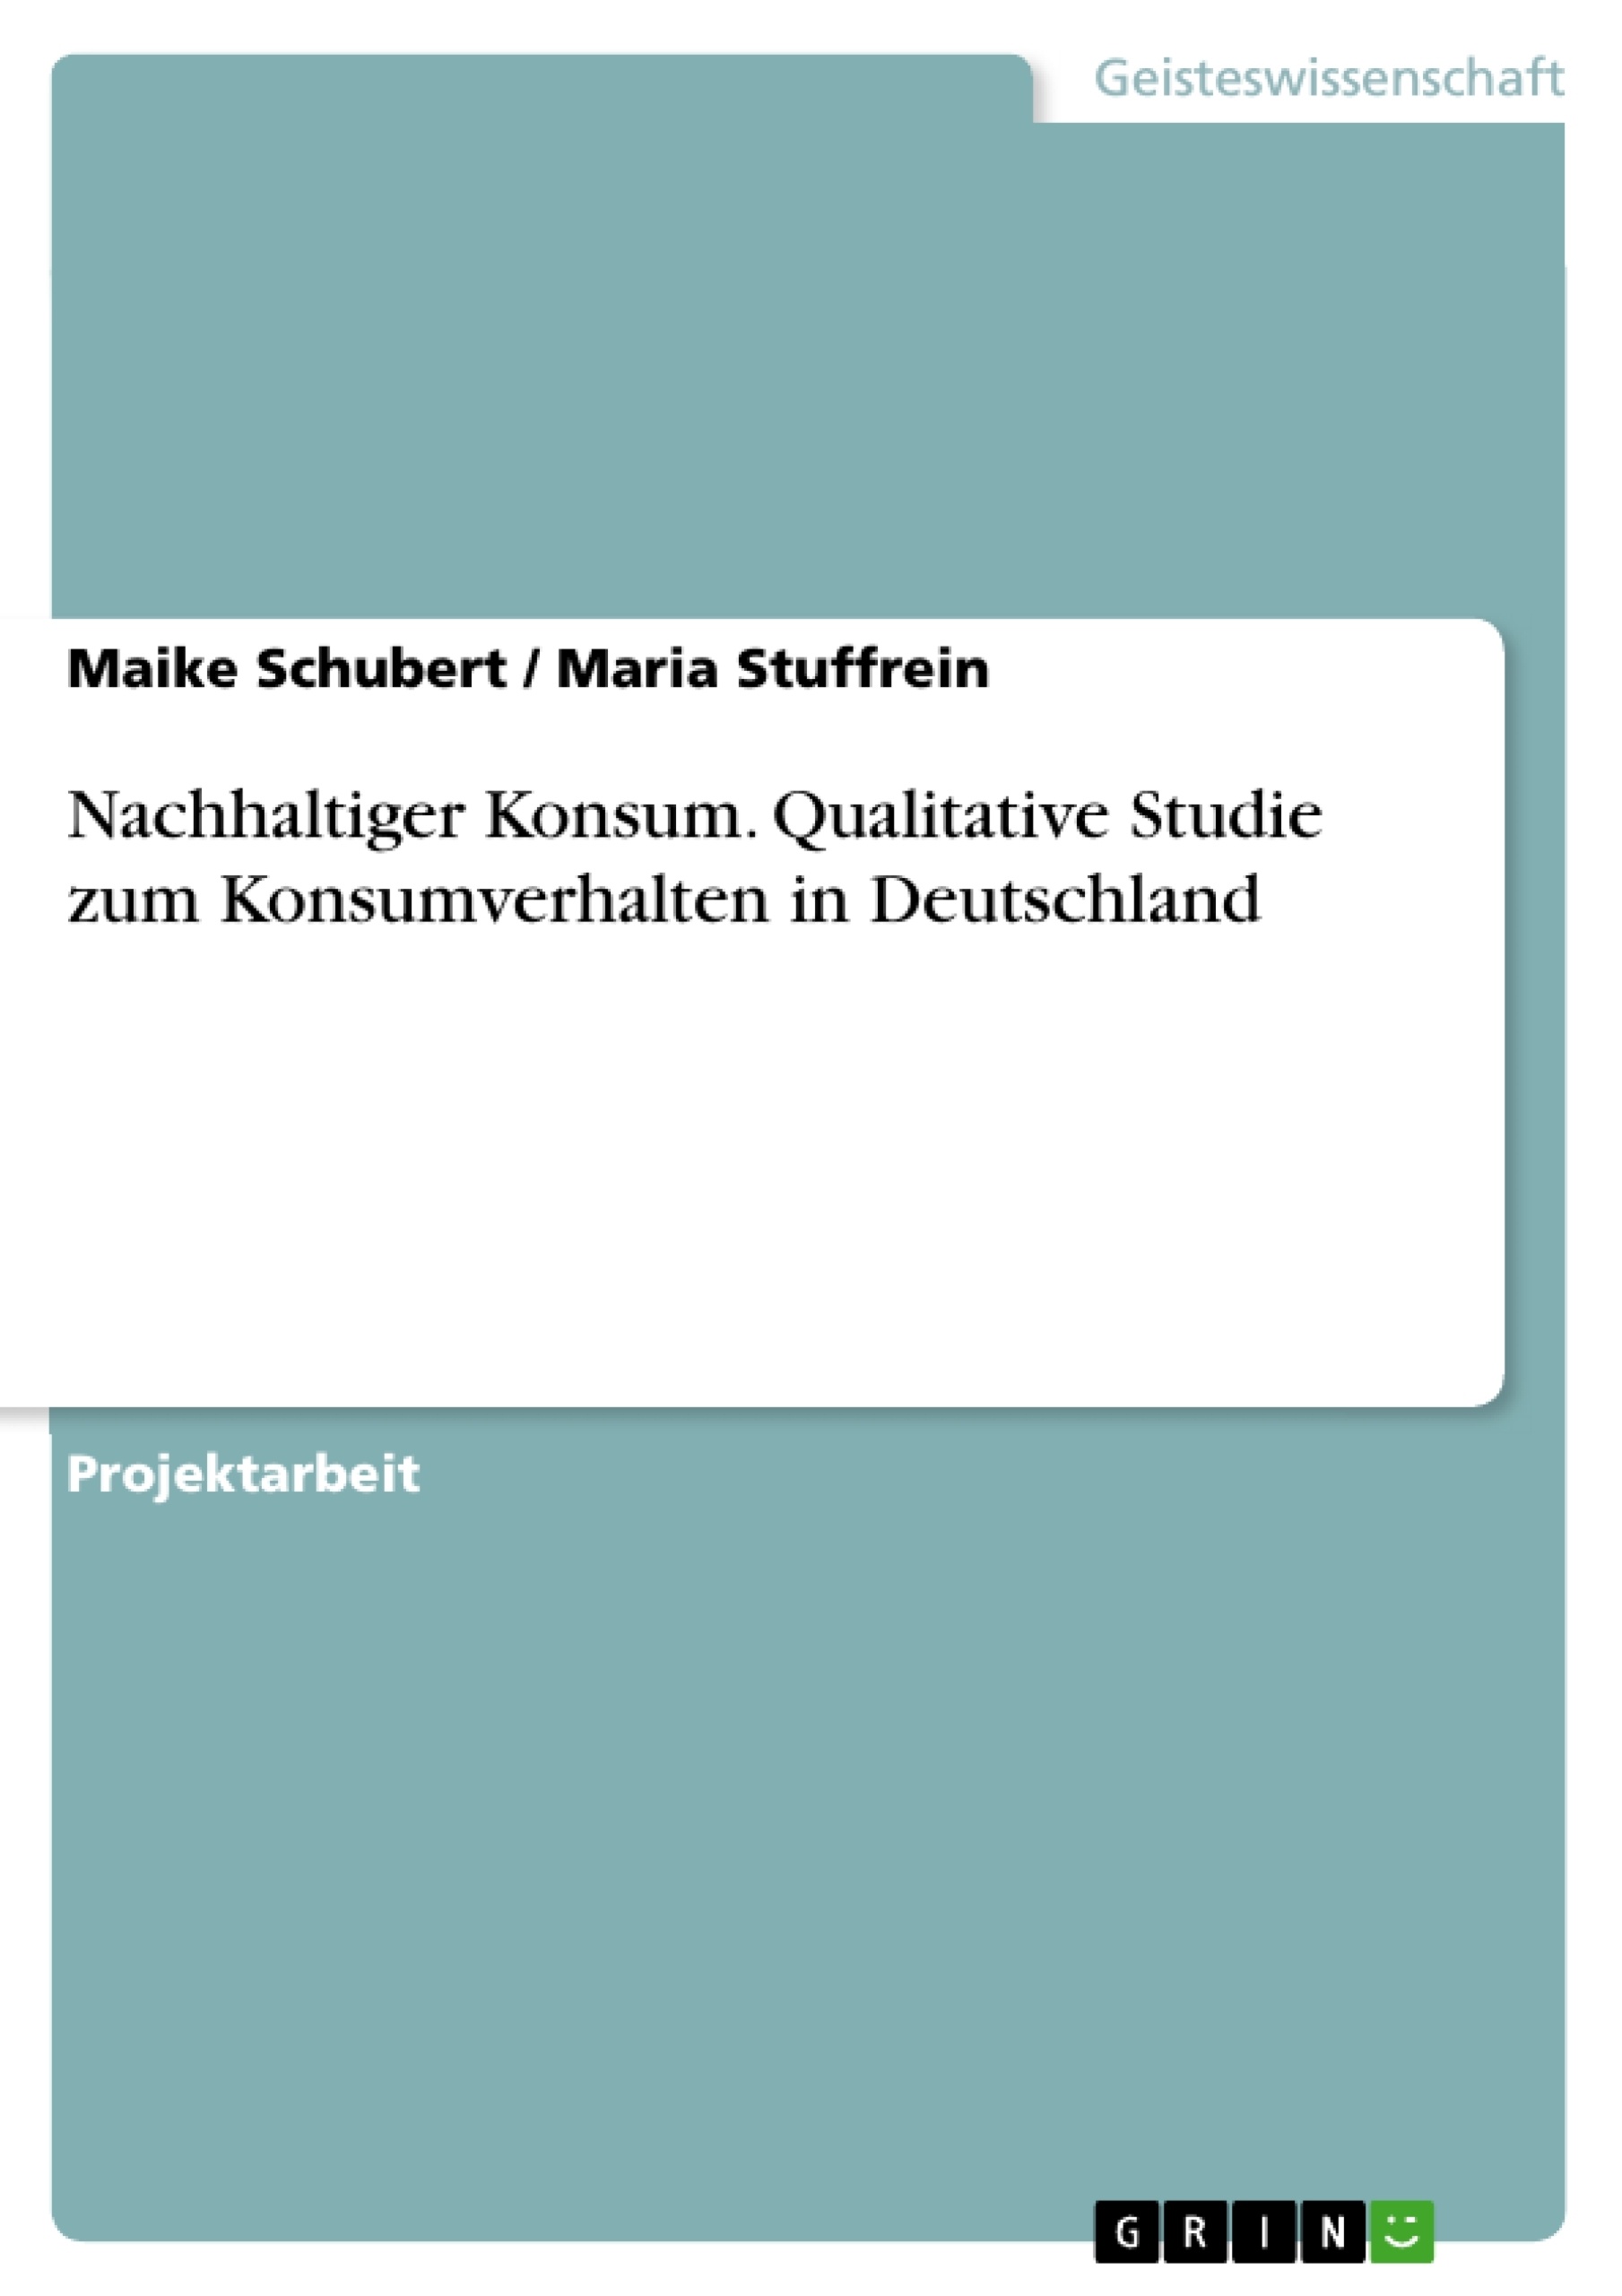 Titre: Nachhaltiger Konsum. Qualitative Studie zum Konsumverhalten in Deutschland